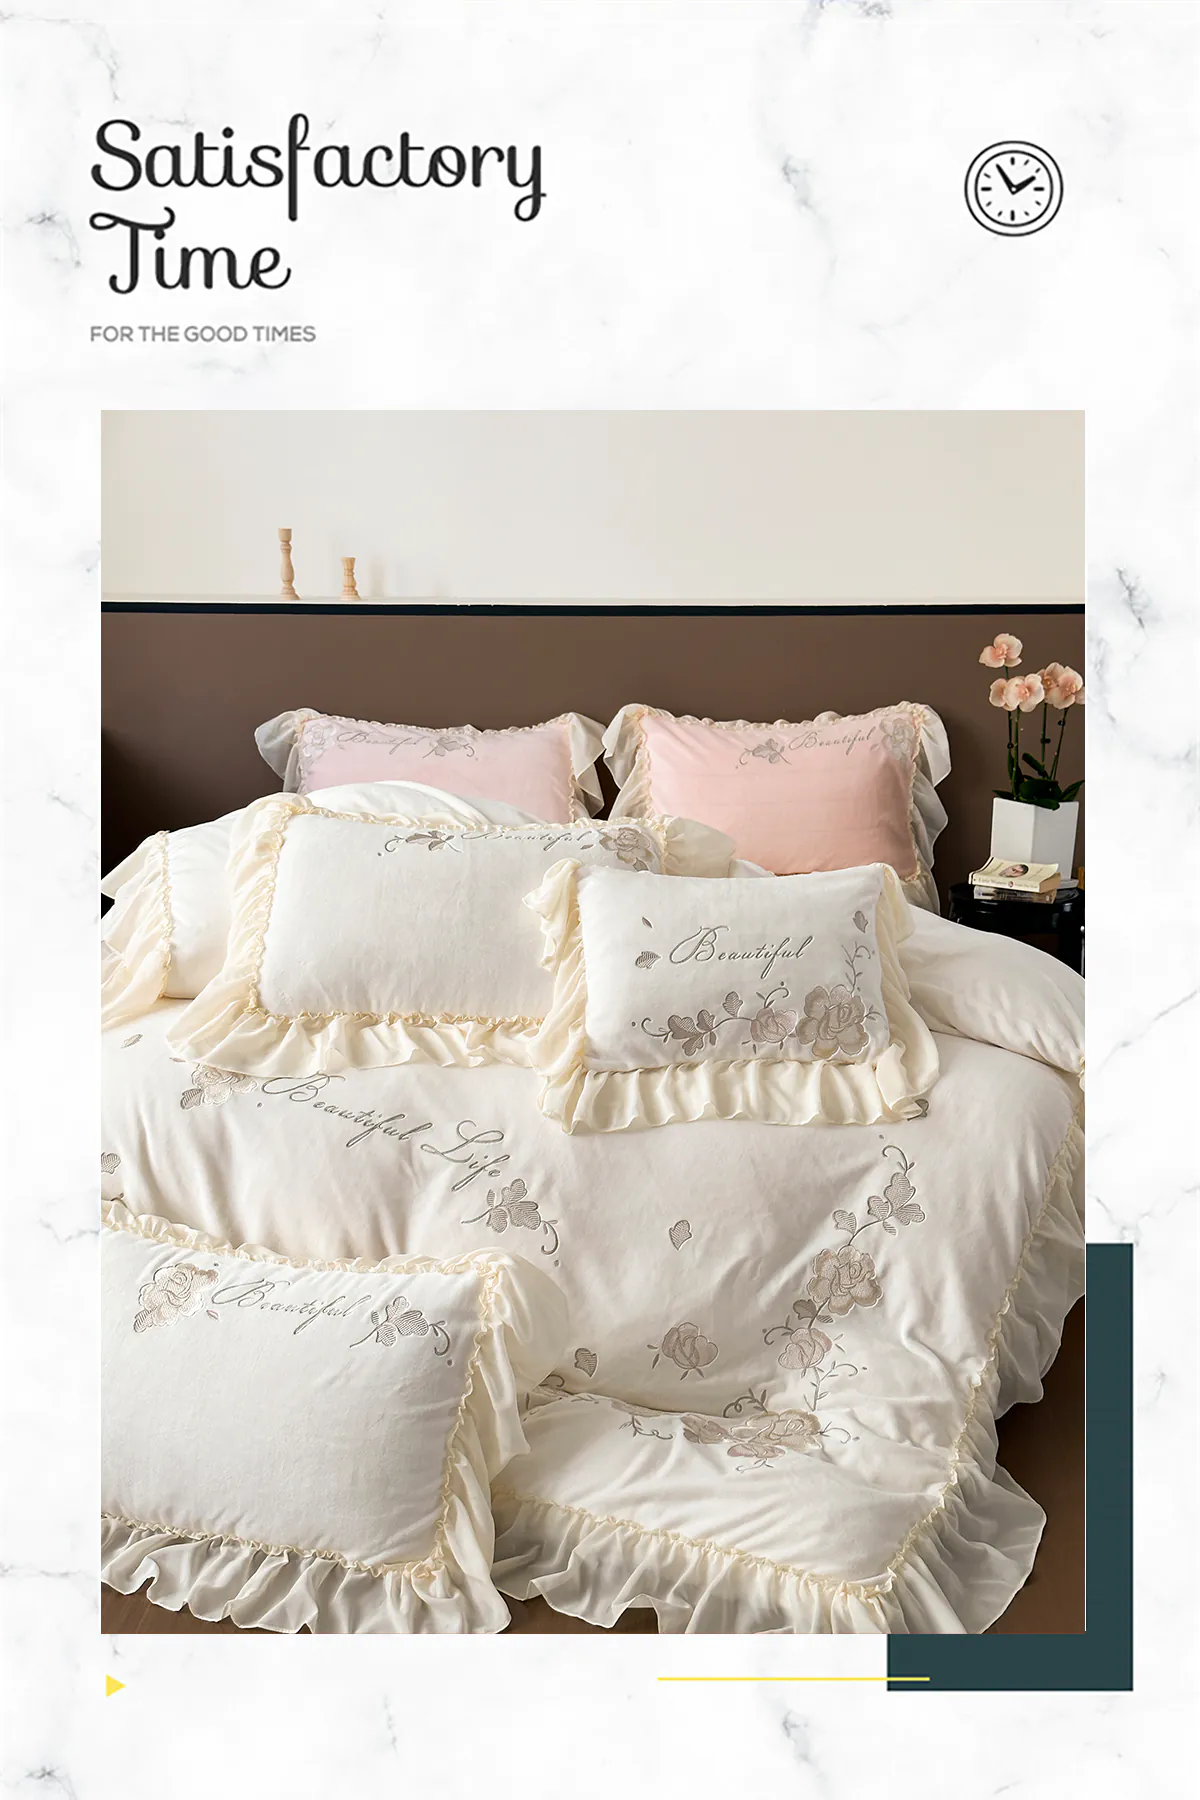 Aesthetic-Soft-Milk-Fiber-Duvet-Cover-Bed-Sheet-Pillowcases-4-Pcs-Set15